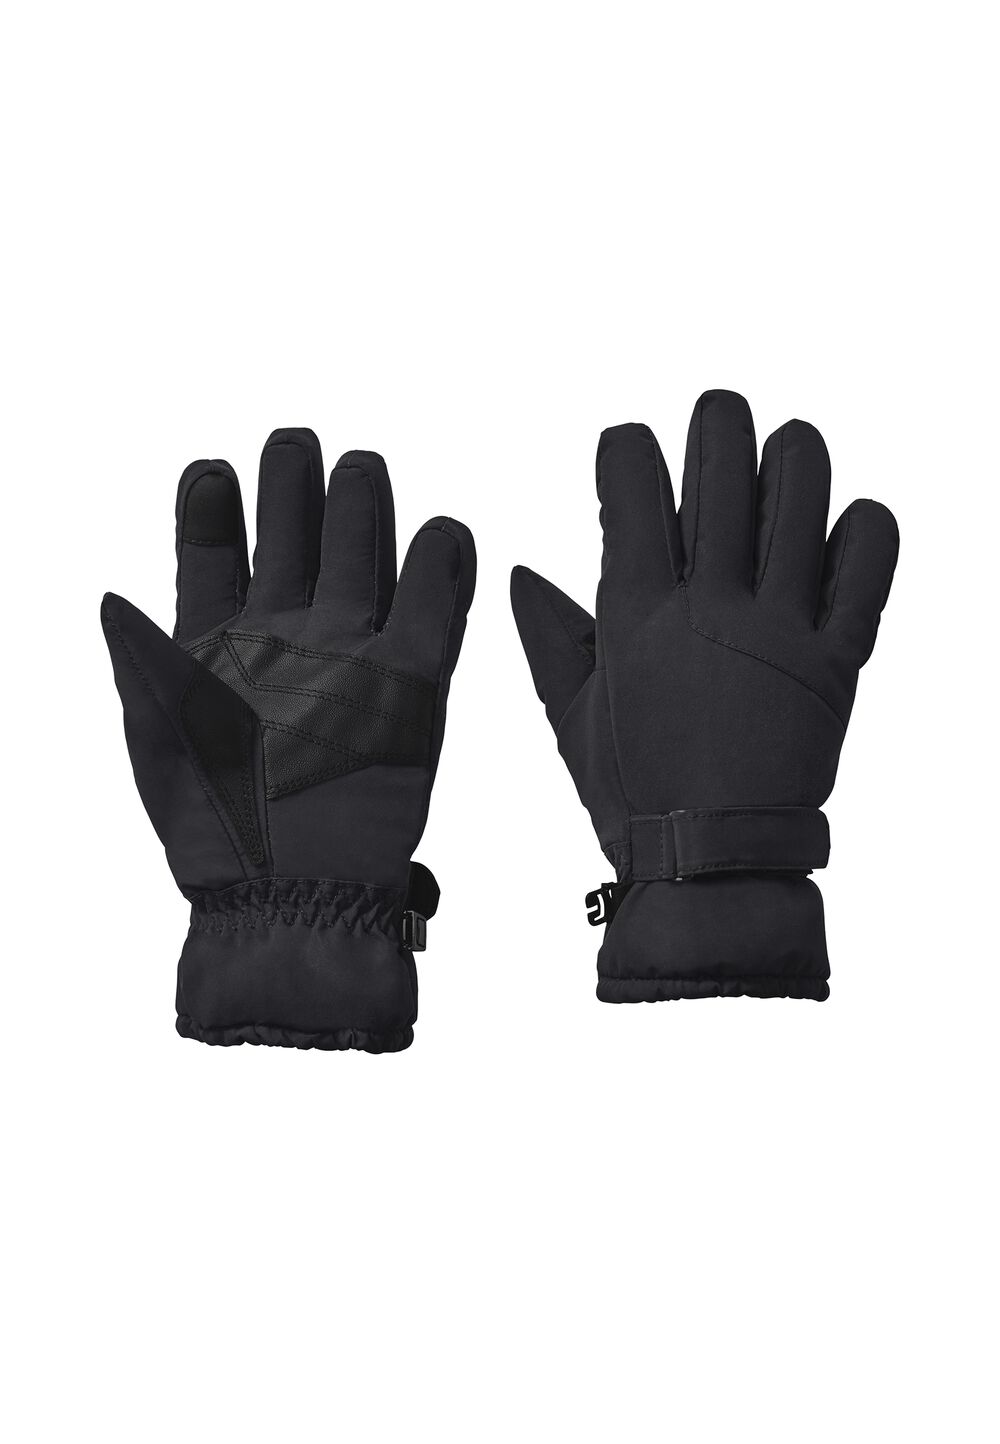 Jack Wolfskin 2L Winter Glove Kids Waterdichte handschoenen Kinderen 116 zwart black